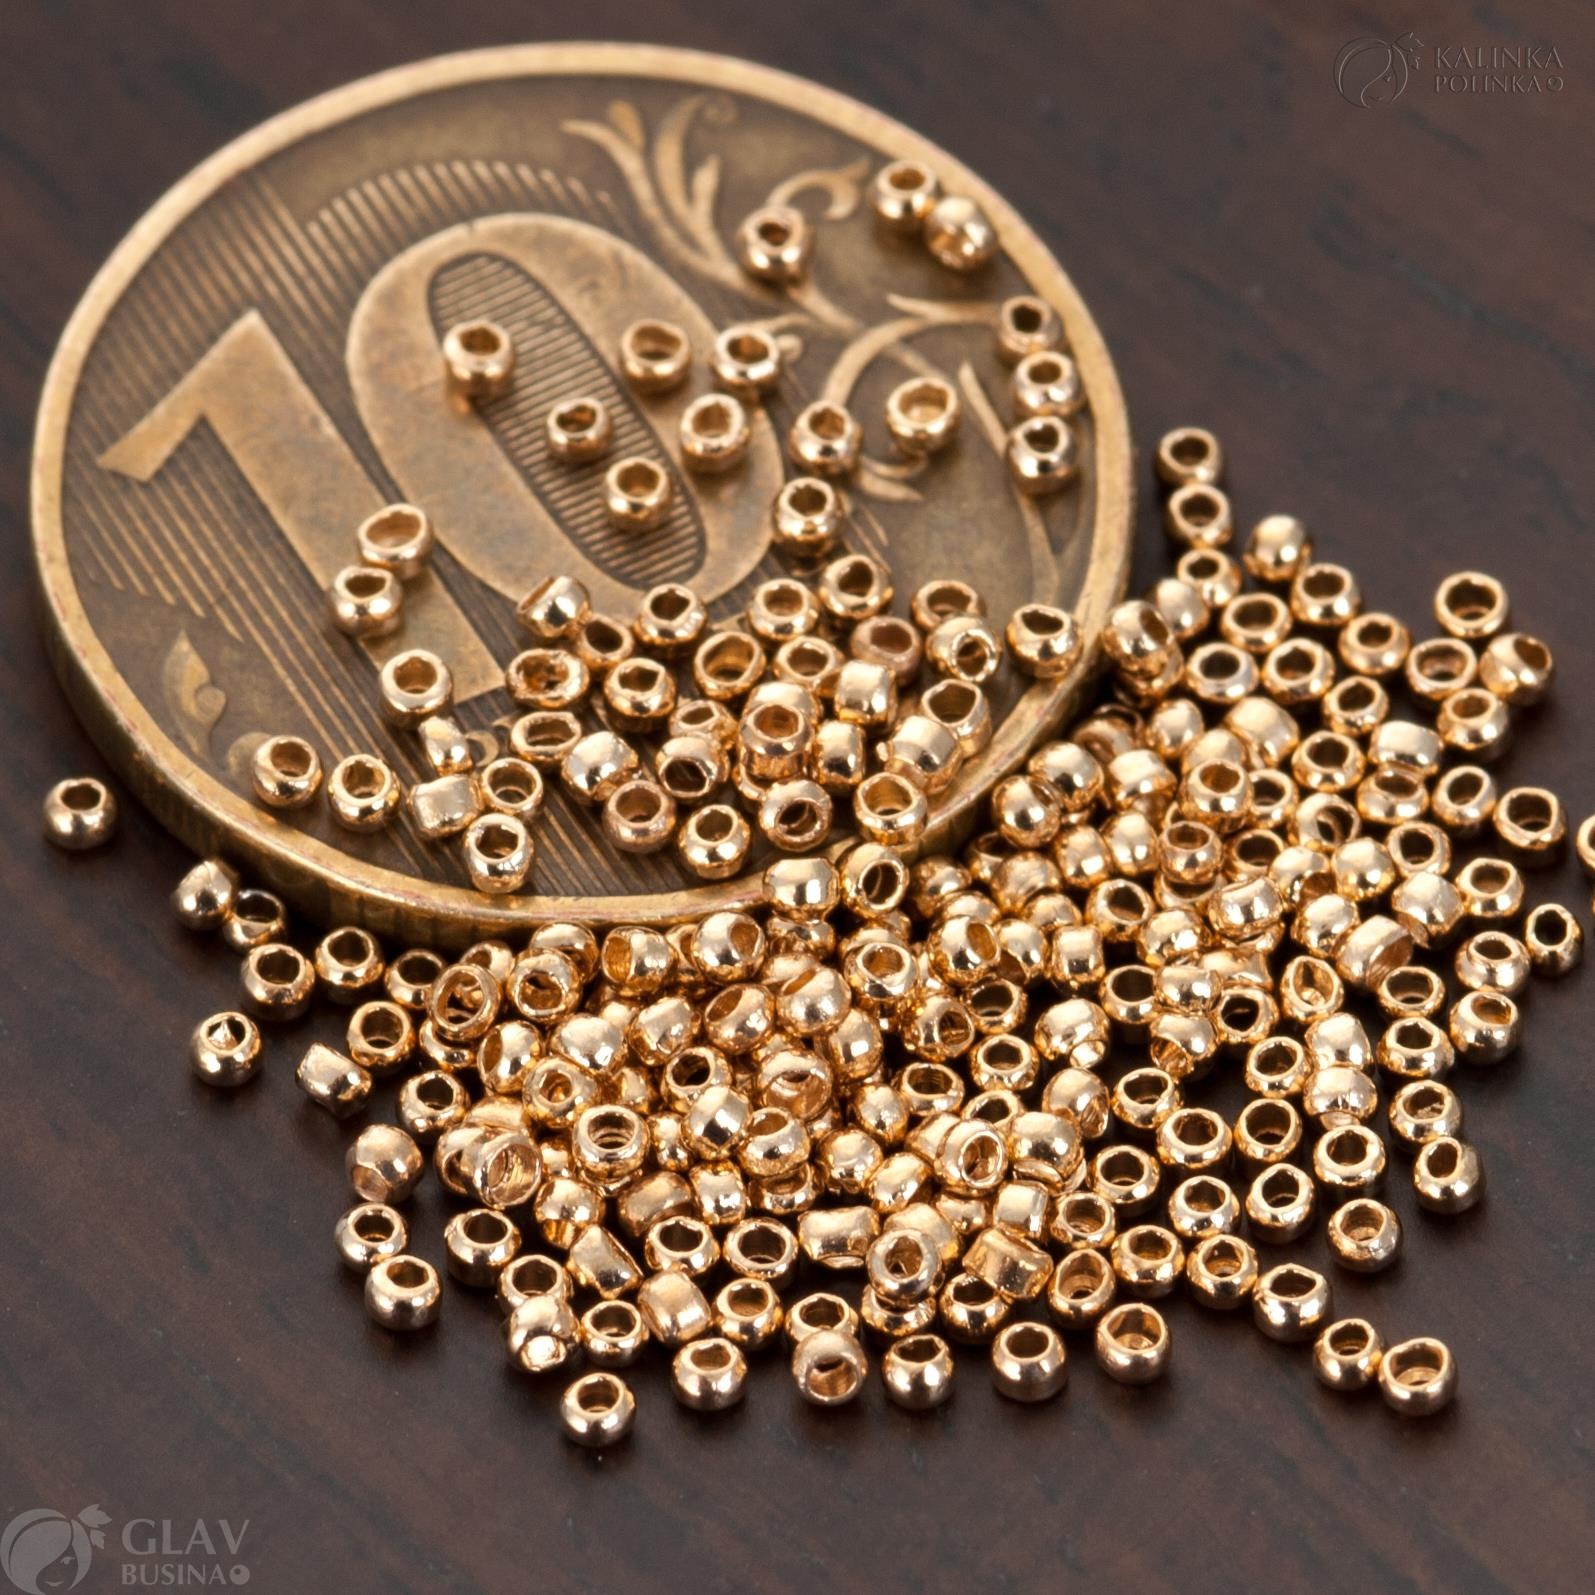 Зажимные бусины из латуни, цвет русское золото, диаметр 1.5мм, отверстие 0.8мм. Для создания украшений. Качественная фурнитура для бижутерии.